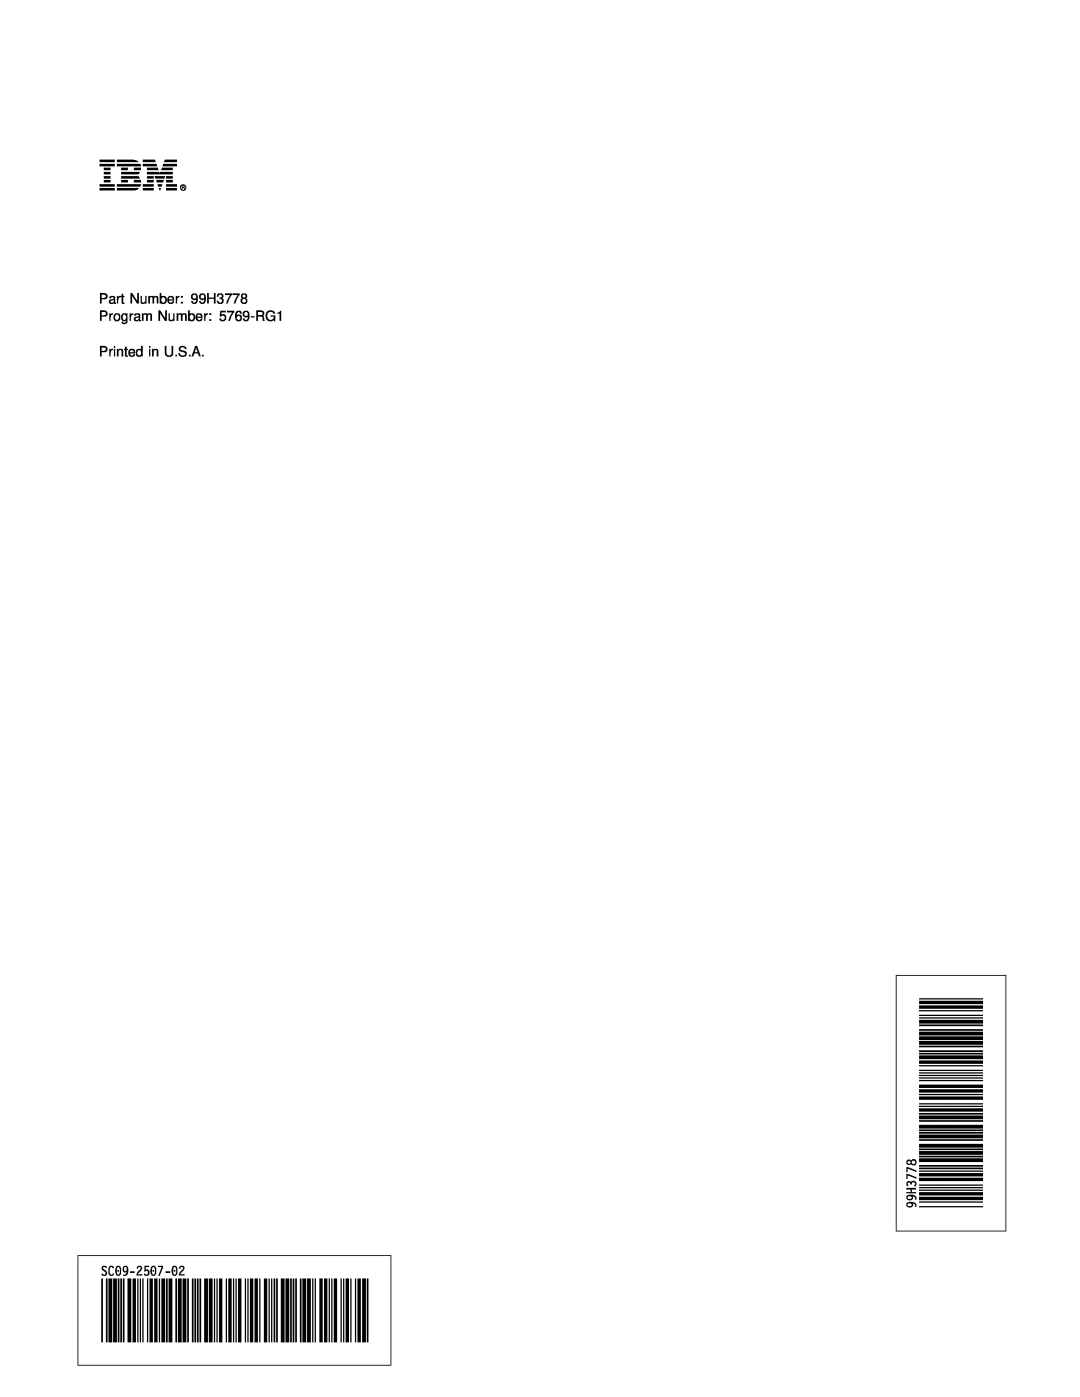 IBM AS/400 manual Éâôù, Part Number 99H3778 Program Number 5769-RG1 Printed in U.S.A, 99H3778 SC09-2507-02 